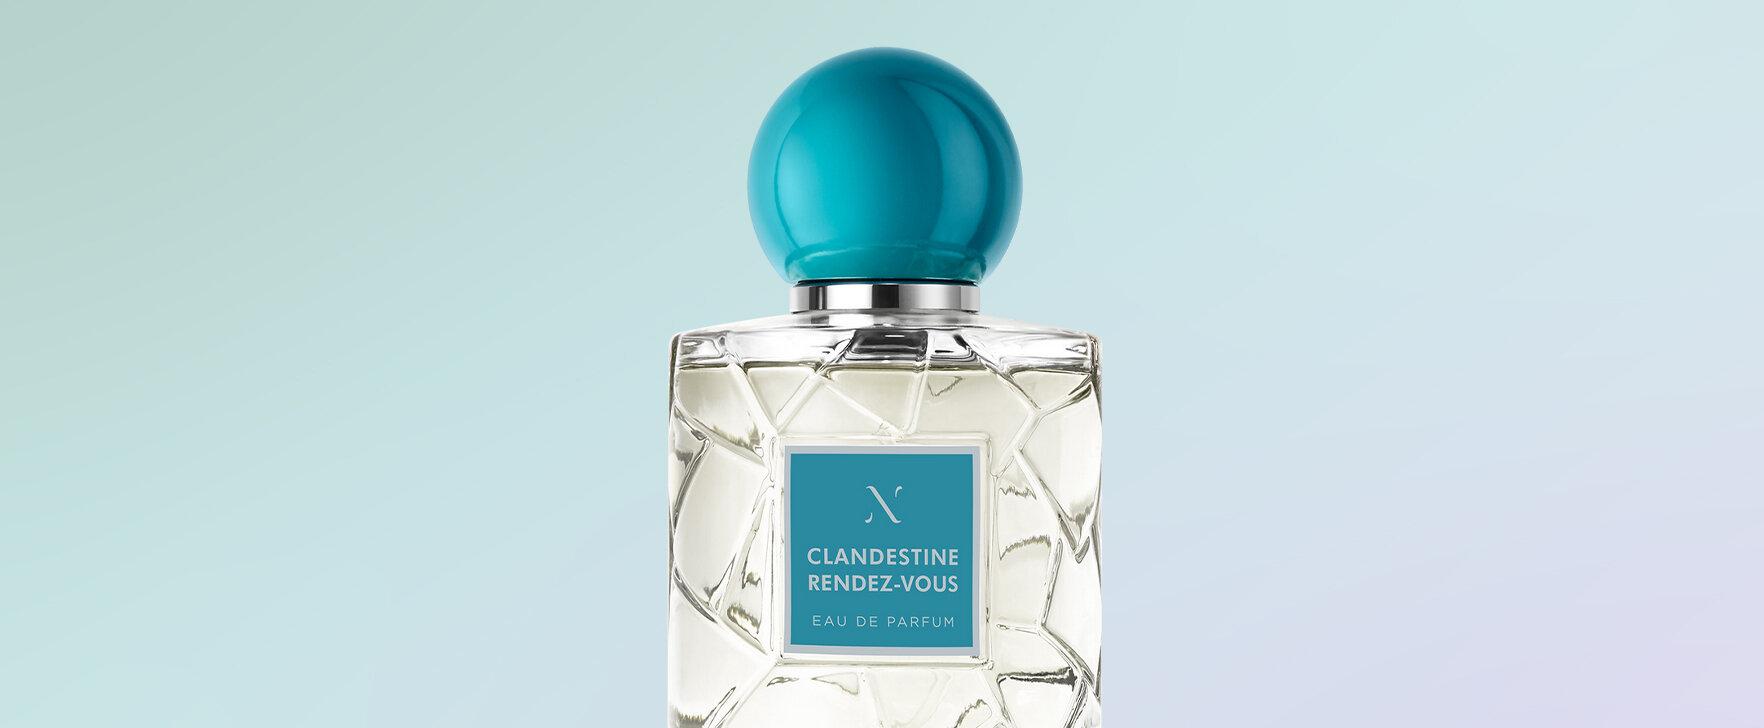 The Essence of a Parisian Love Affair: The New Eau de Parfum Clandestine Rendez-Vous by Les Sœurs de Noé